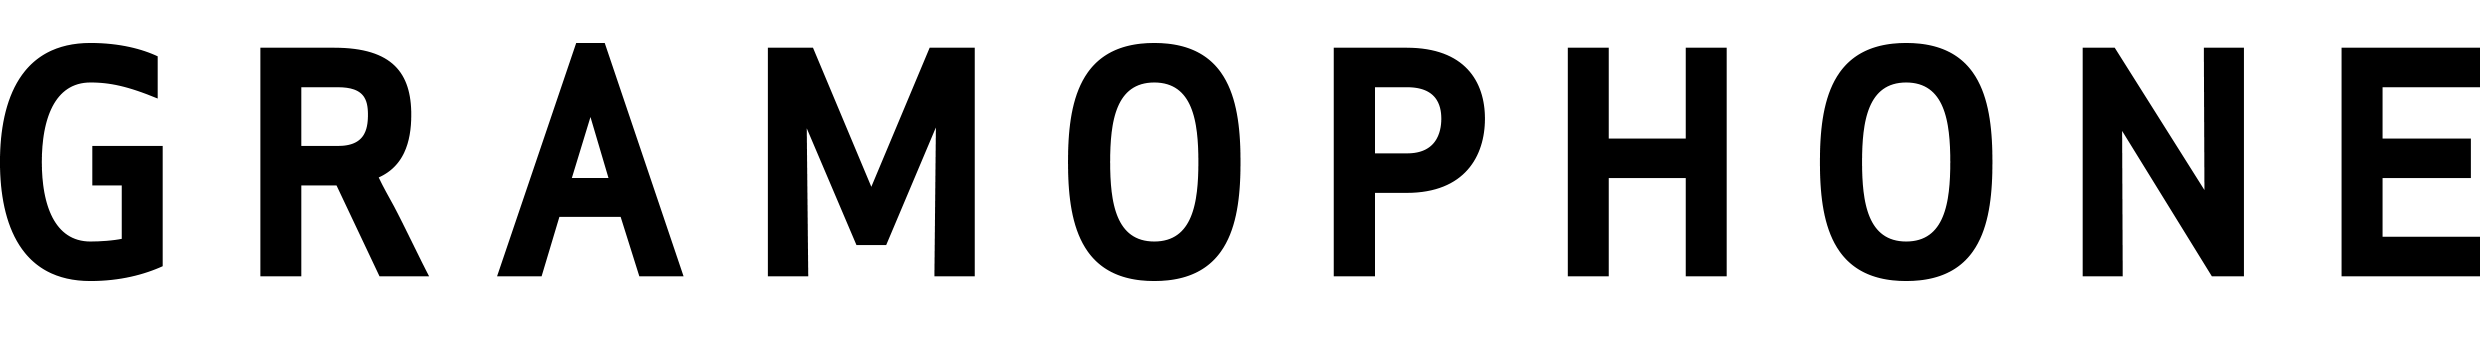 Gramophone logo.png